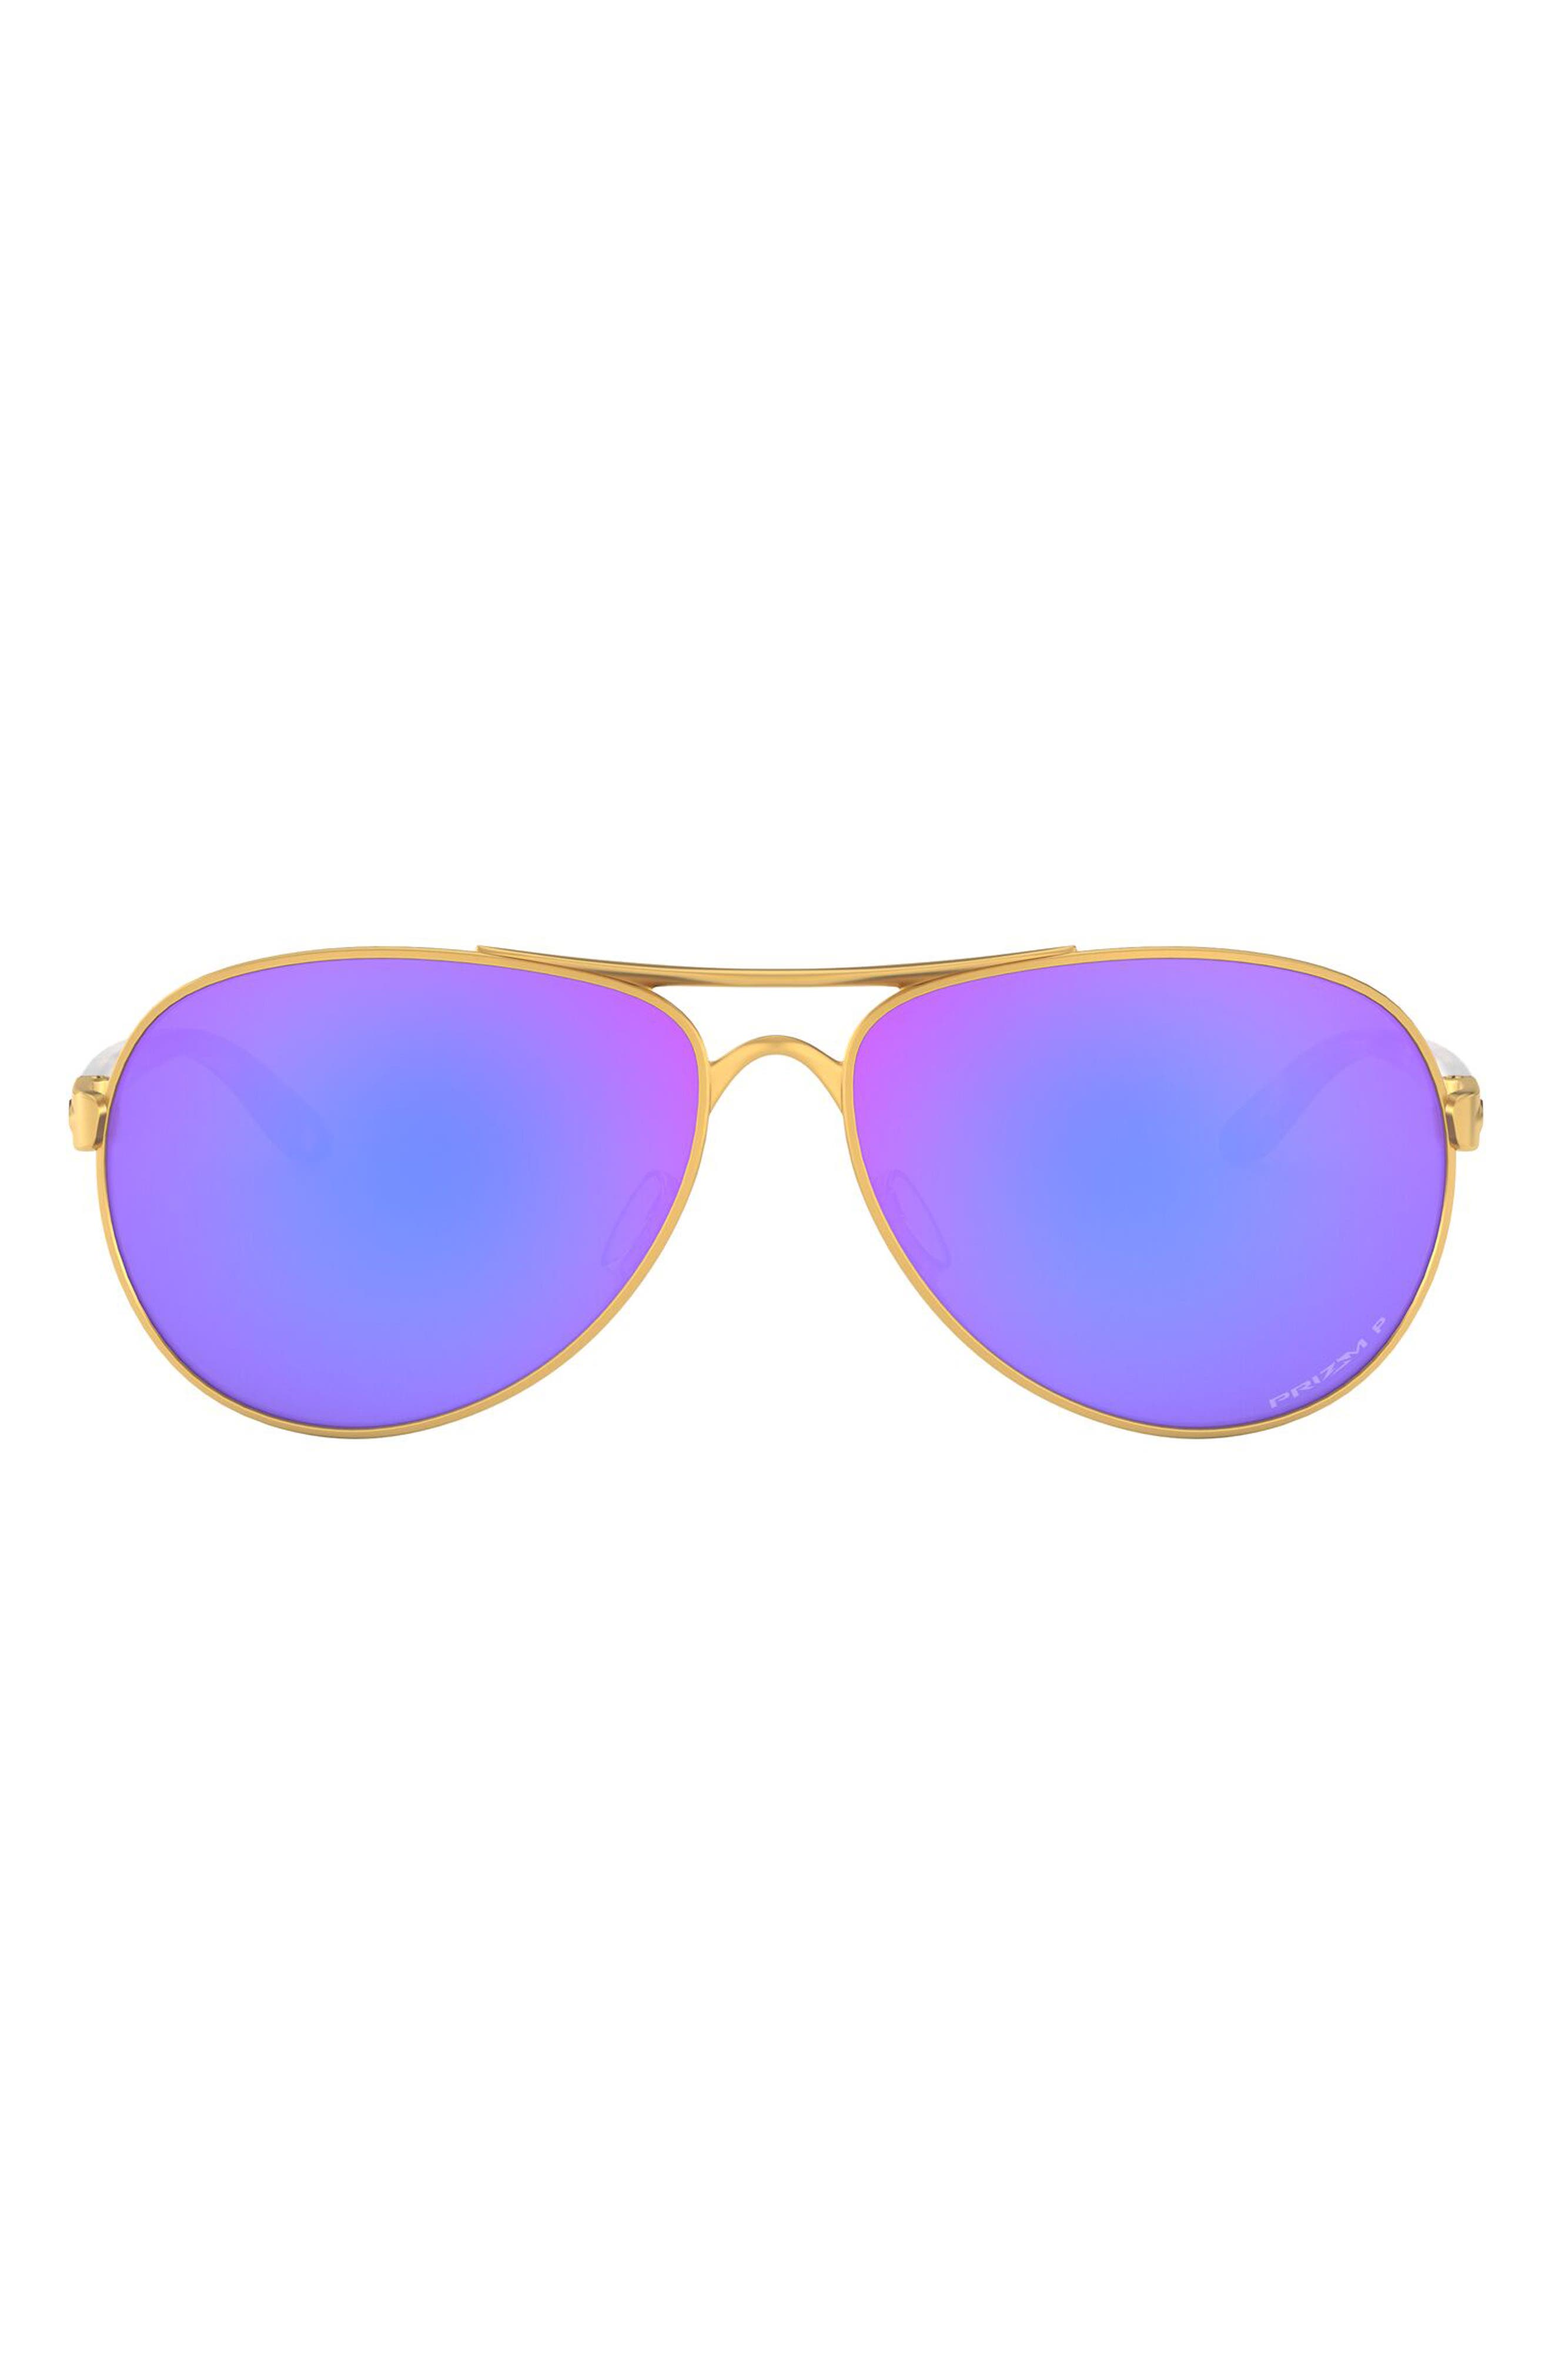 oakley polarized aviator sunglasses